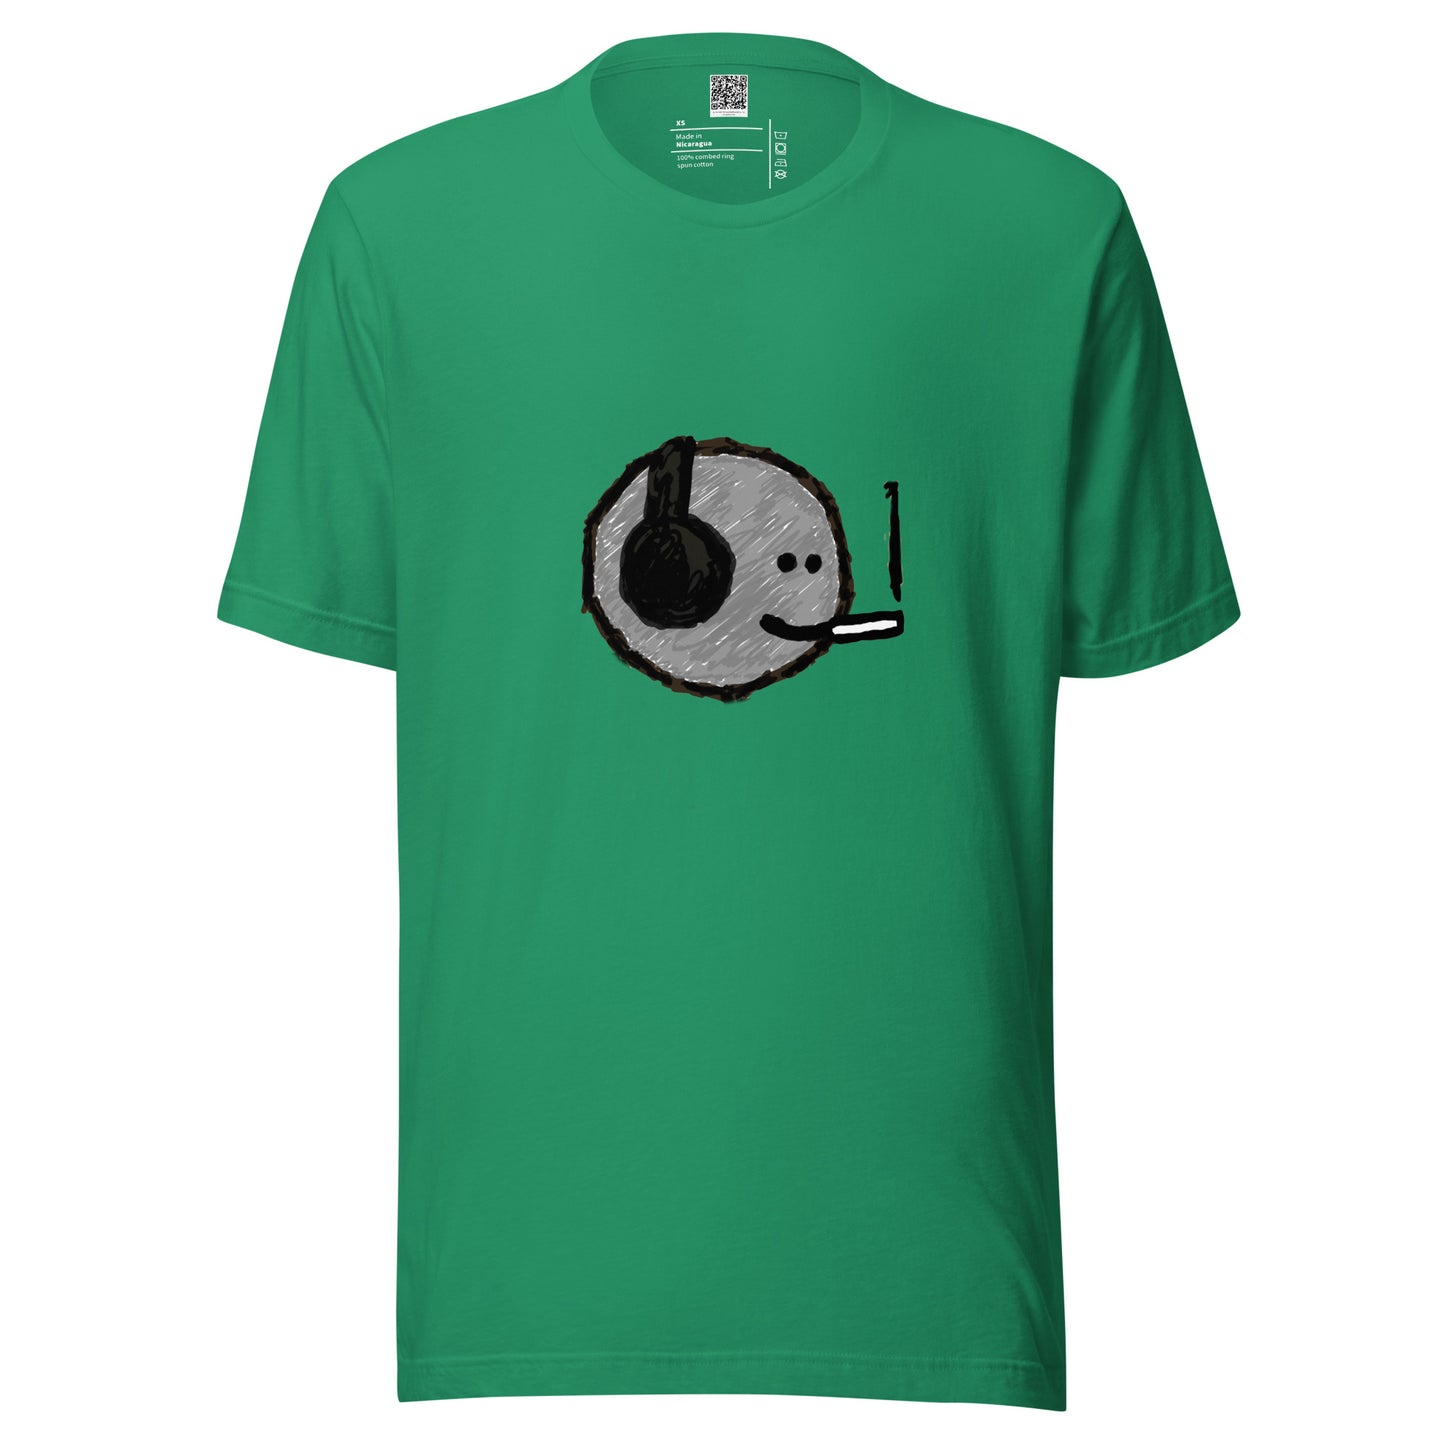 Unisex t-shirt - mfers charcoal smoker